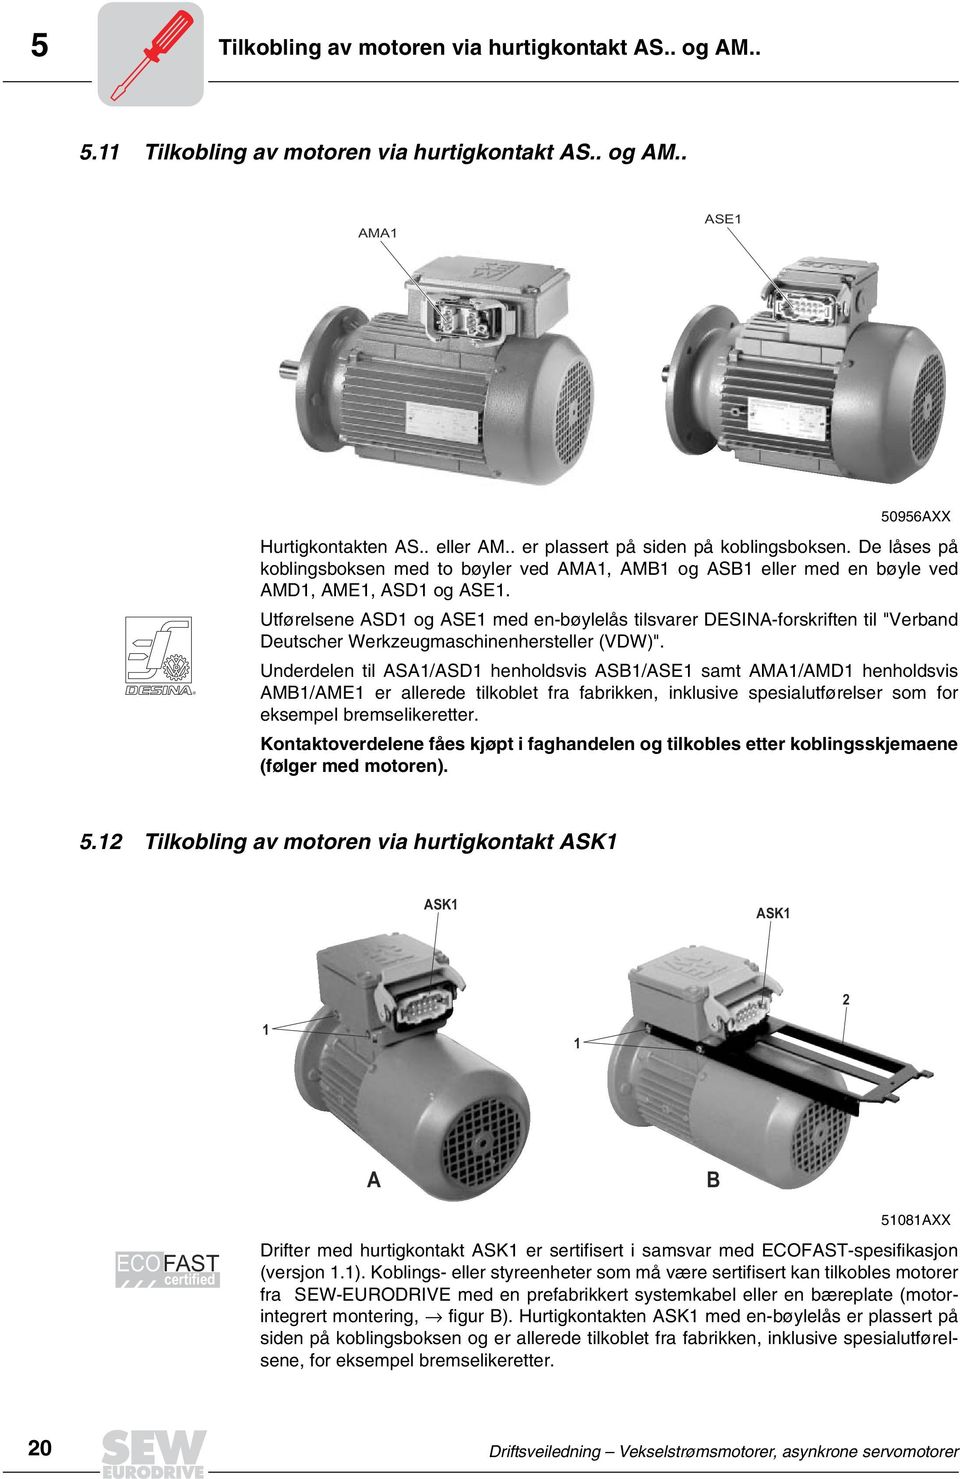 Utførelsene ASD1 og ASE1 med enbøylelås tilsvarer DESINAforskriften til "Verband Deutscher Werkzeugmaschinenhersteller (VDW)".